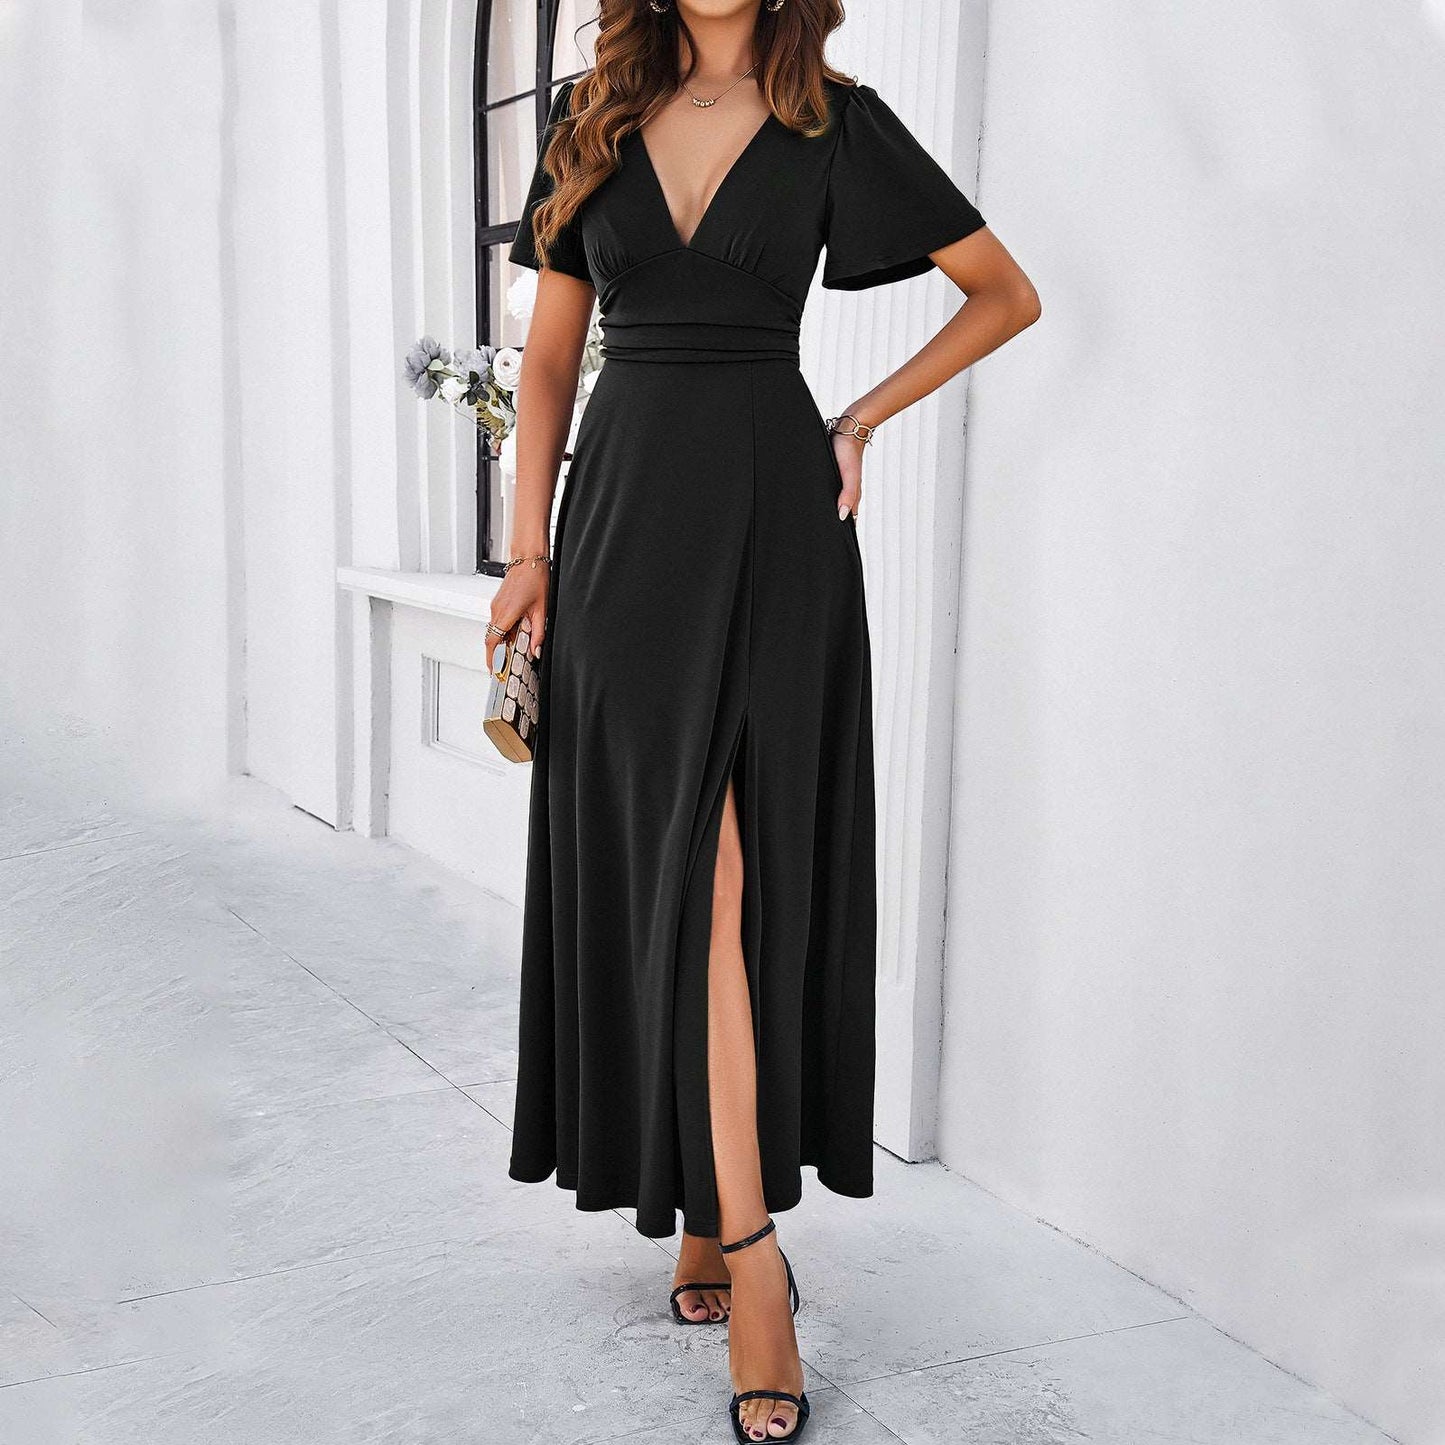 Women's Elegant Solid Color Slim V-neck Dress